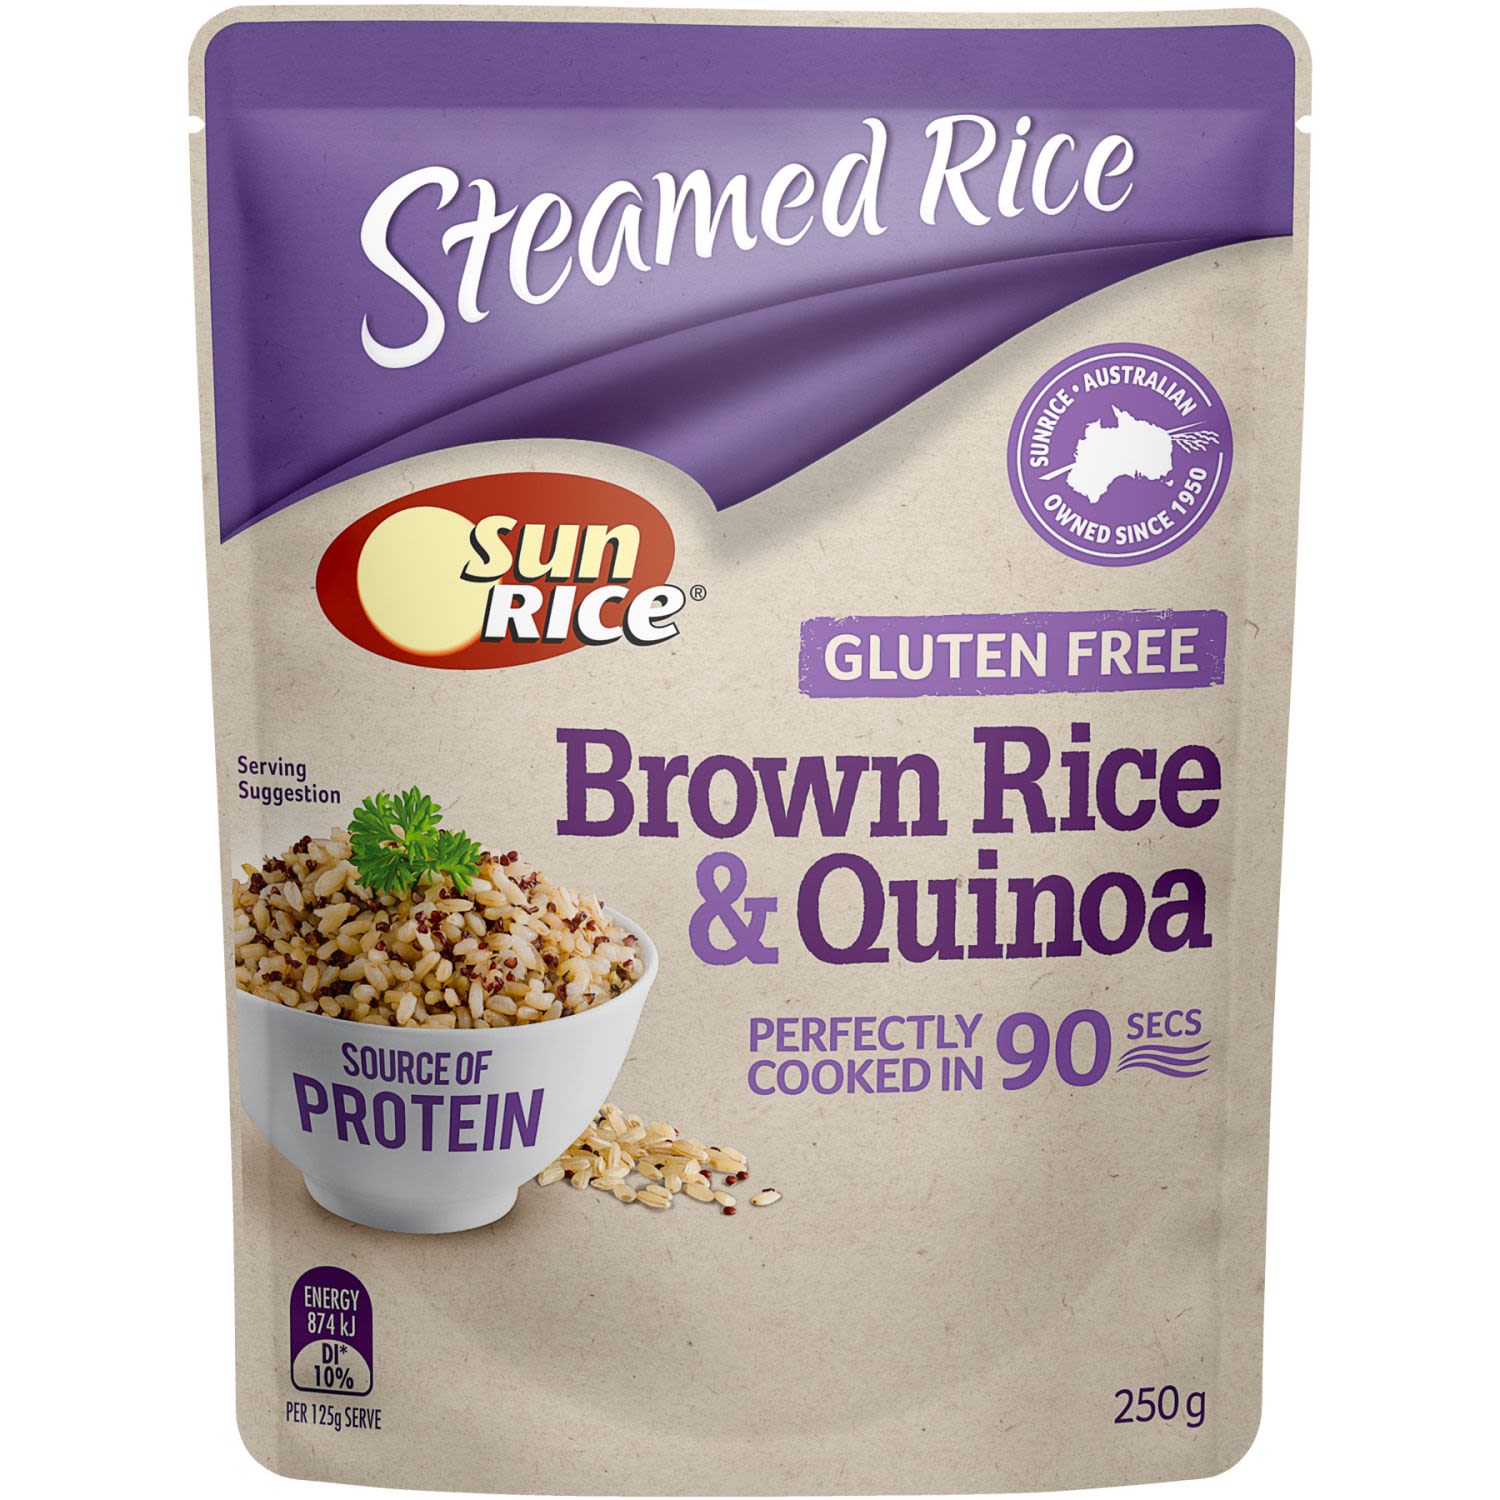 SunRice Steamed Rice Gluten Free Brown Rice & Quinoa, 250 Gram